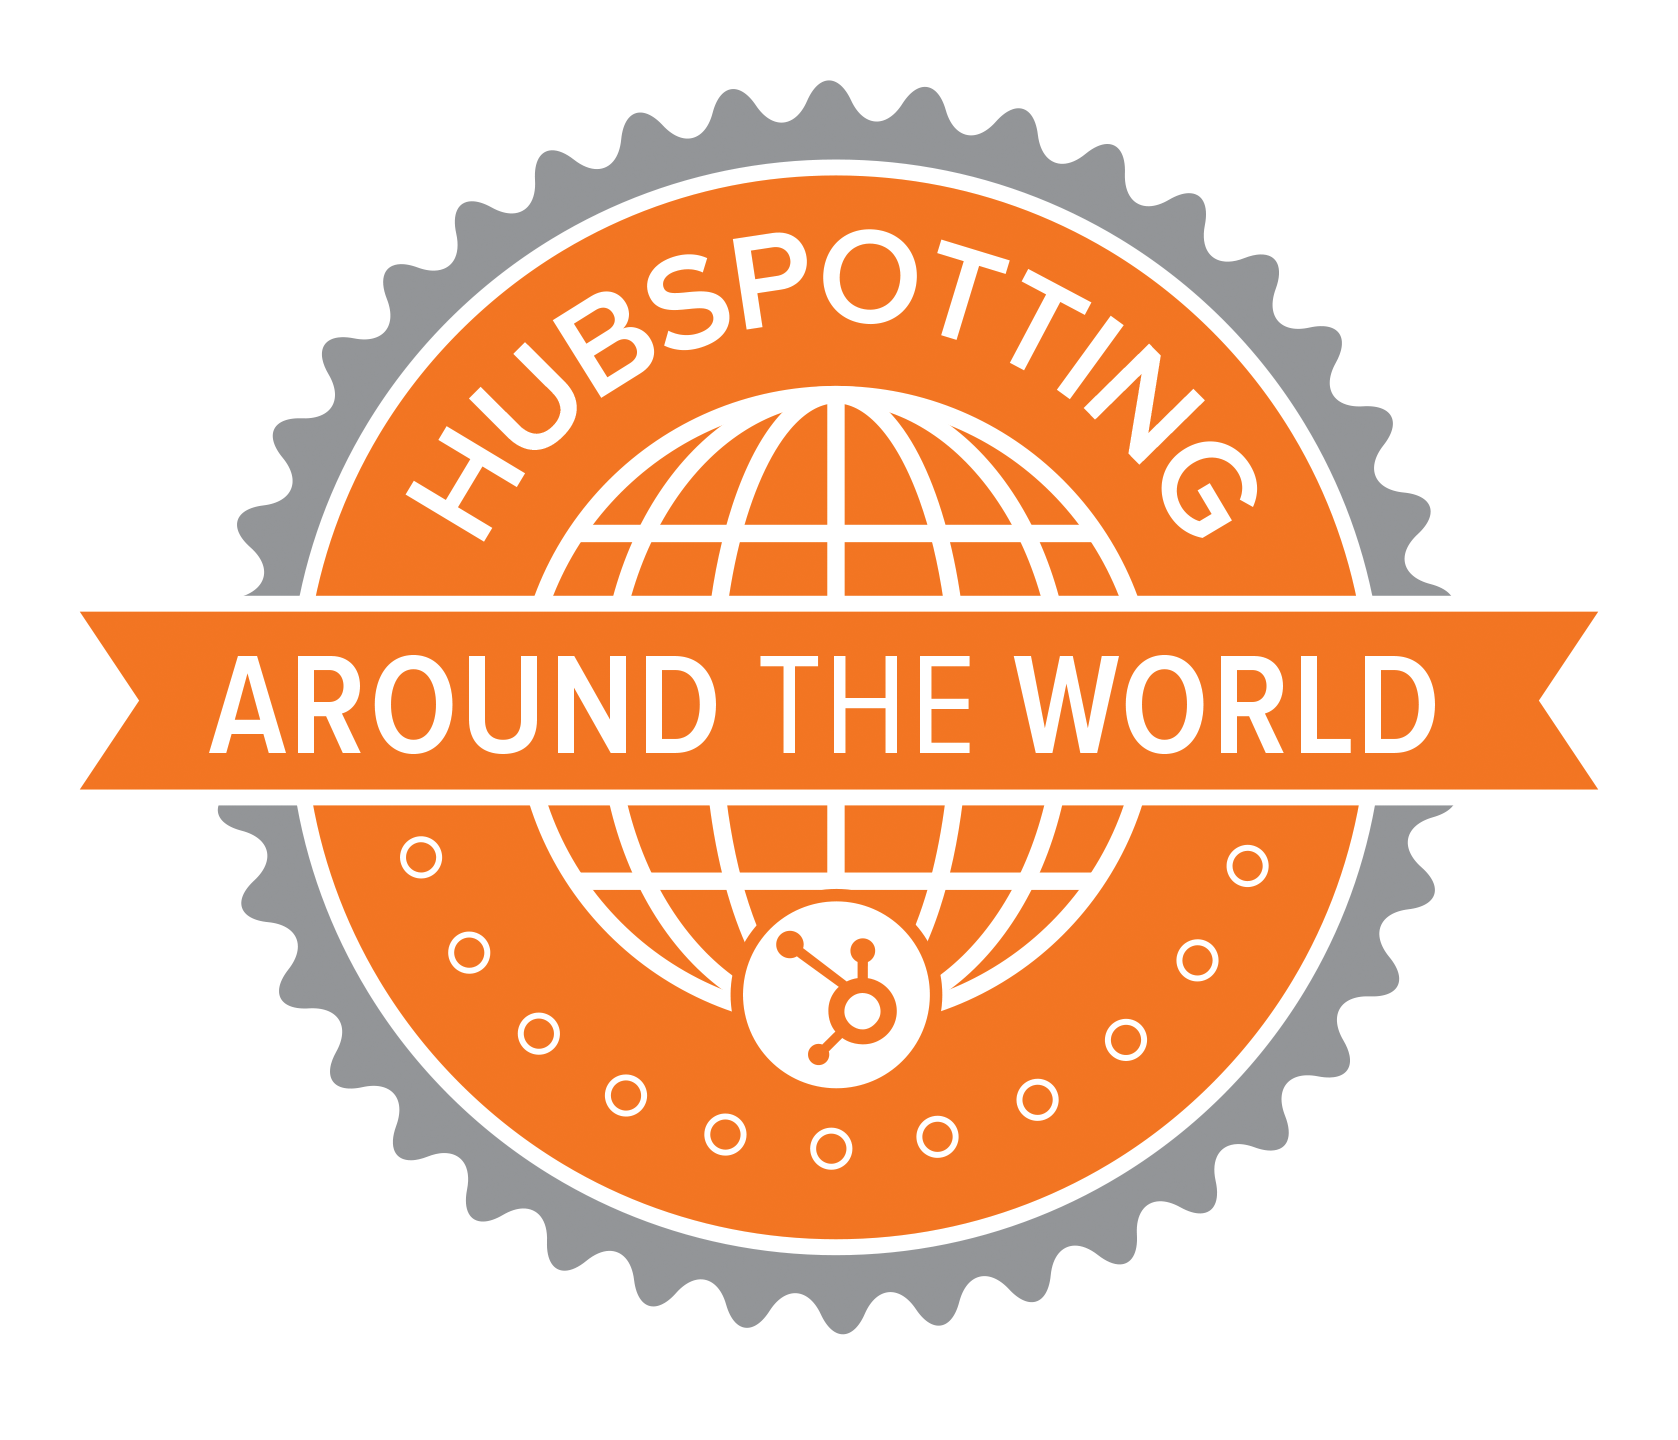 HubSpotting Around the World Explores Inbound Marketing’s Global Reach